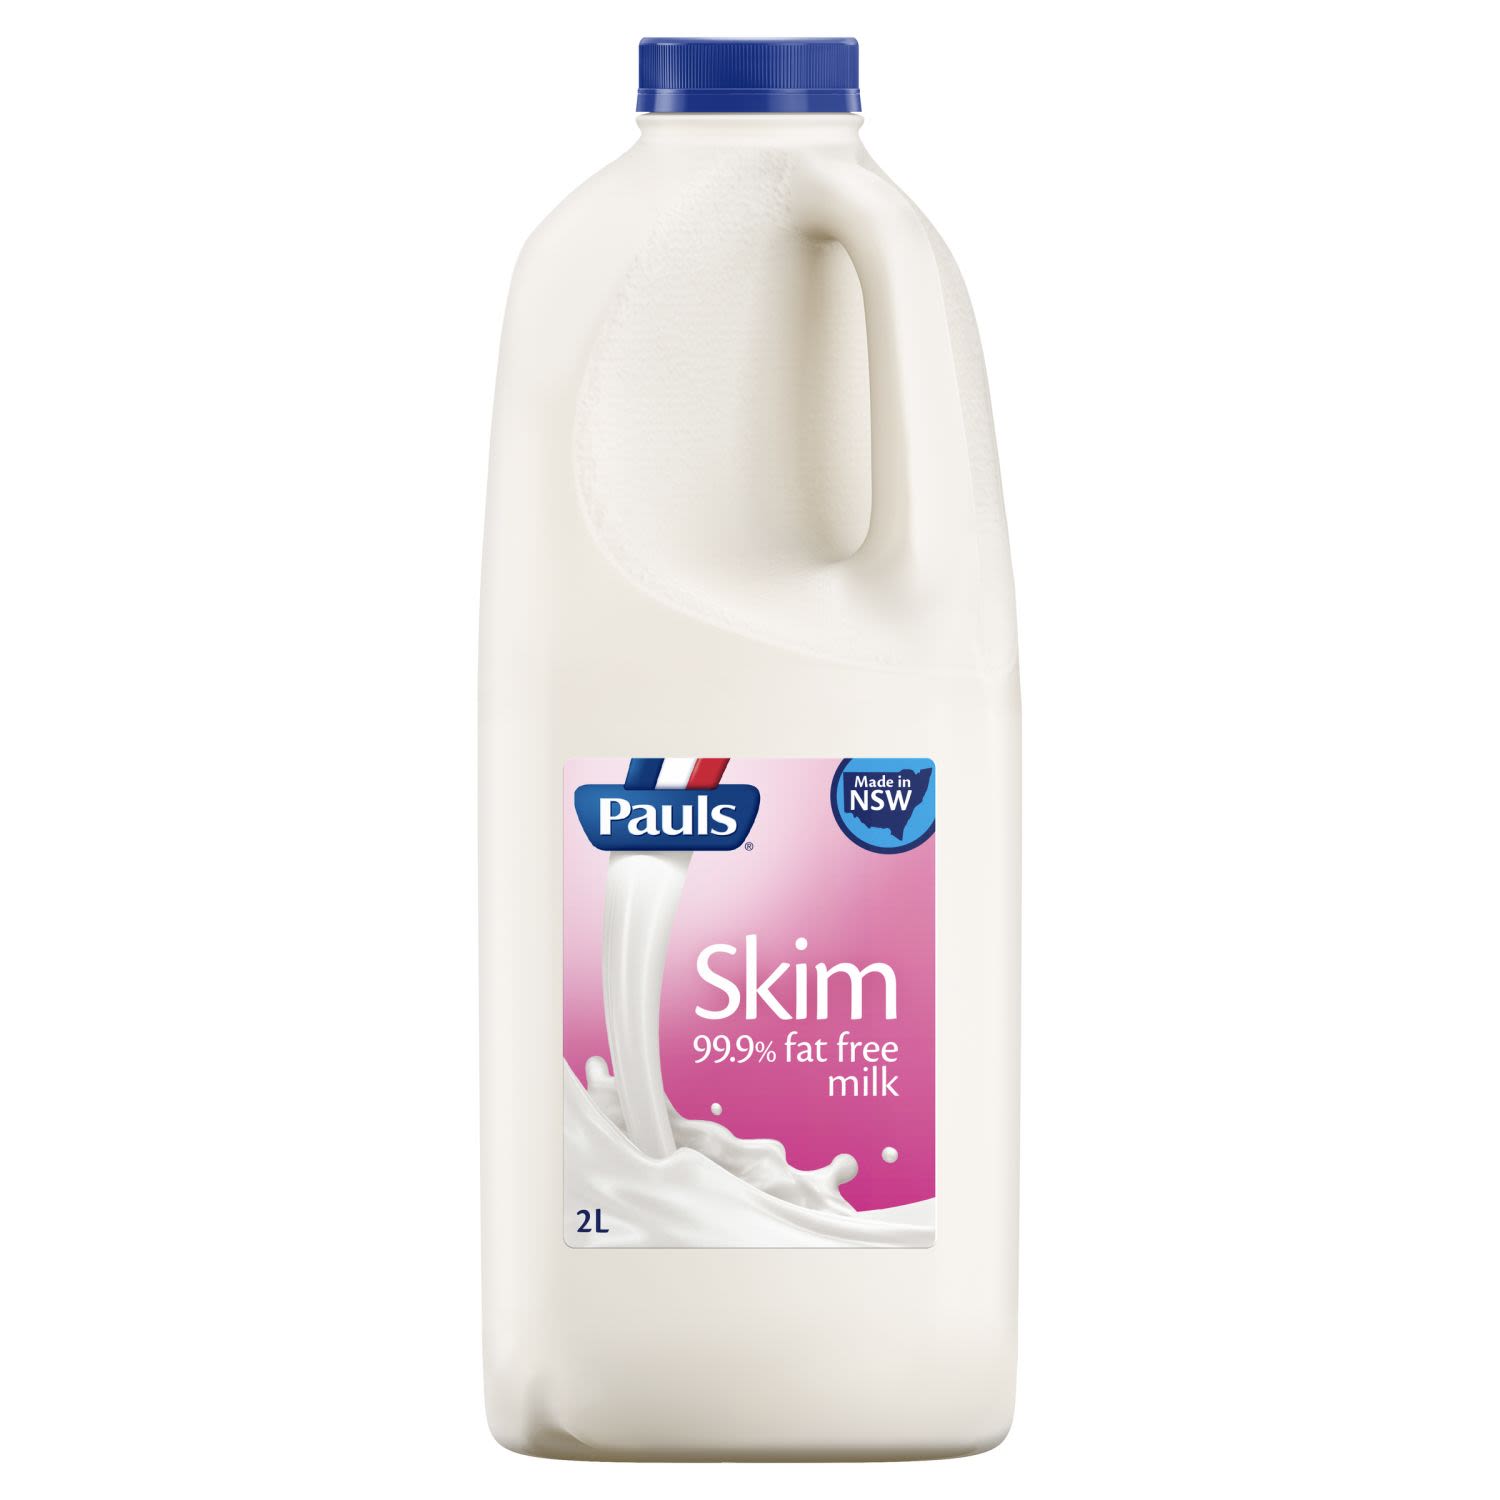 Pauls Skim Fat Free Milk, 2 Litre